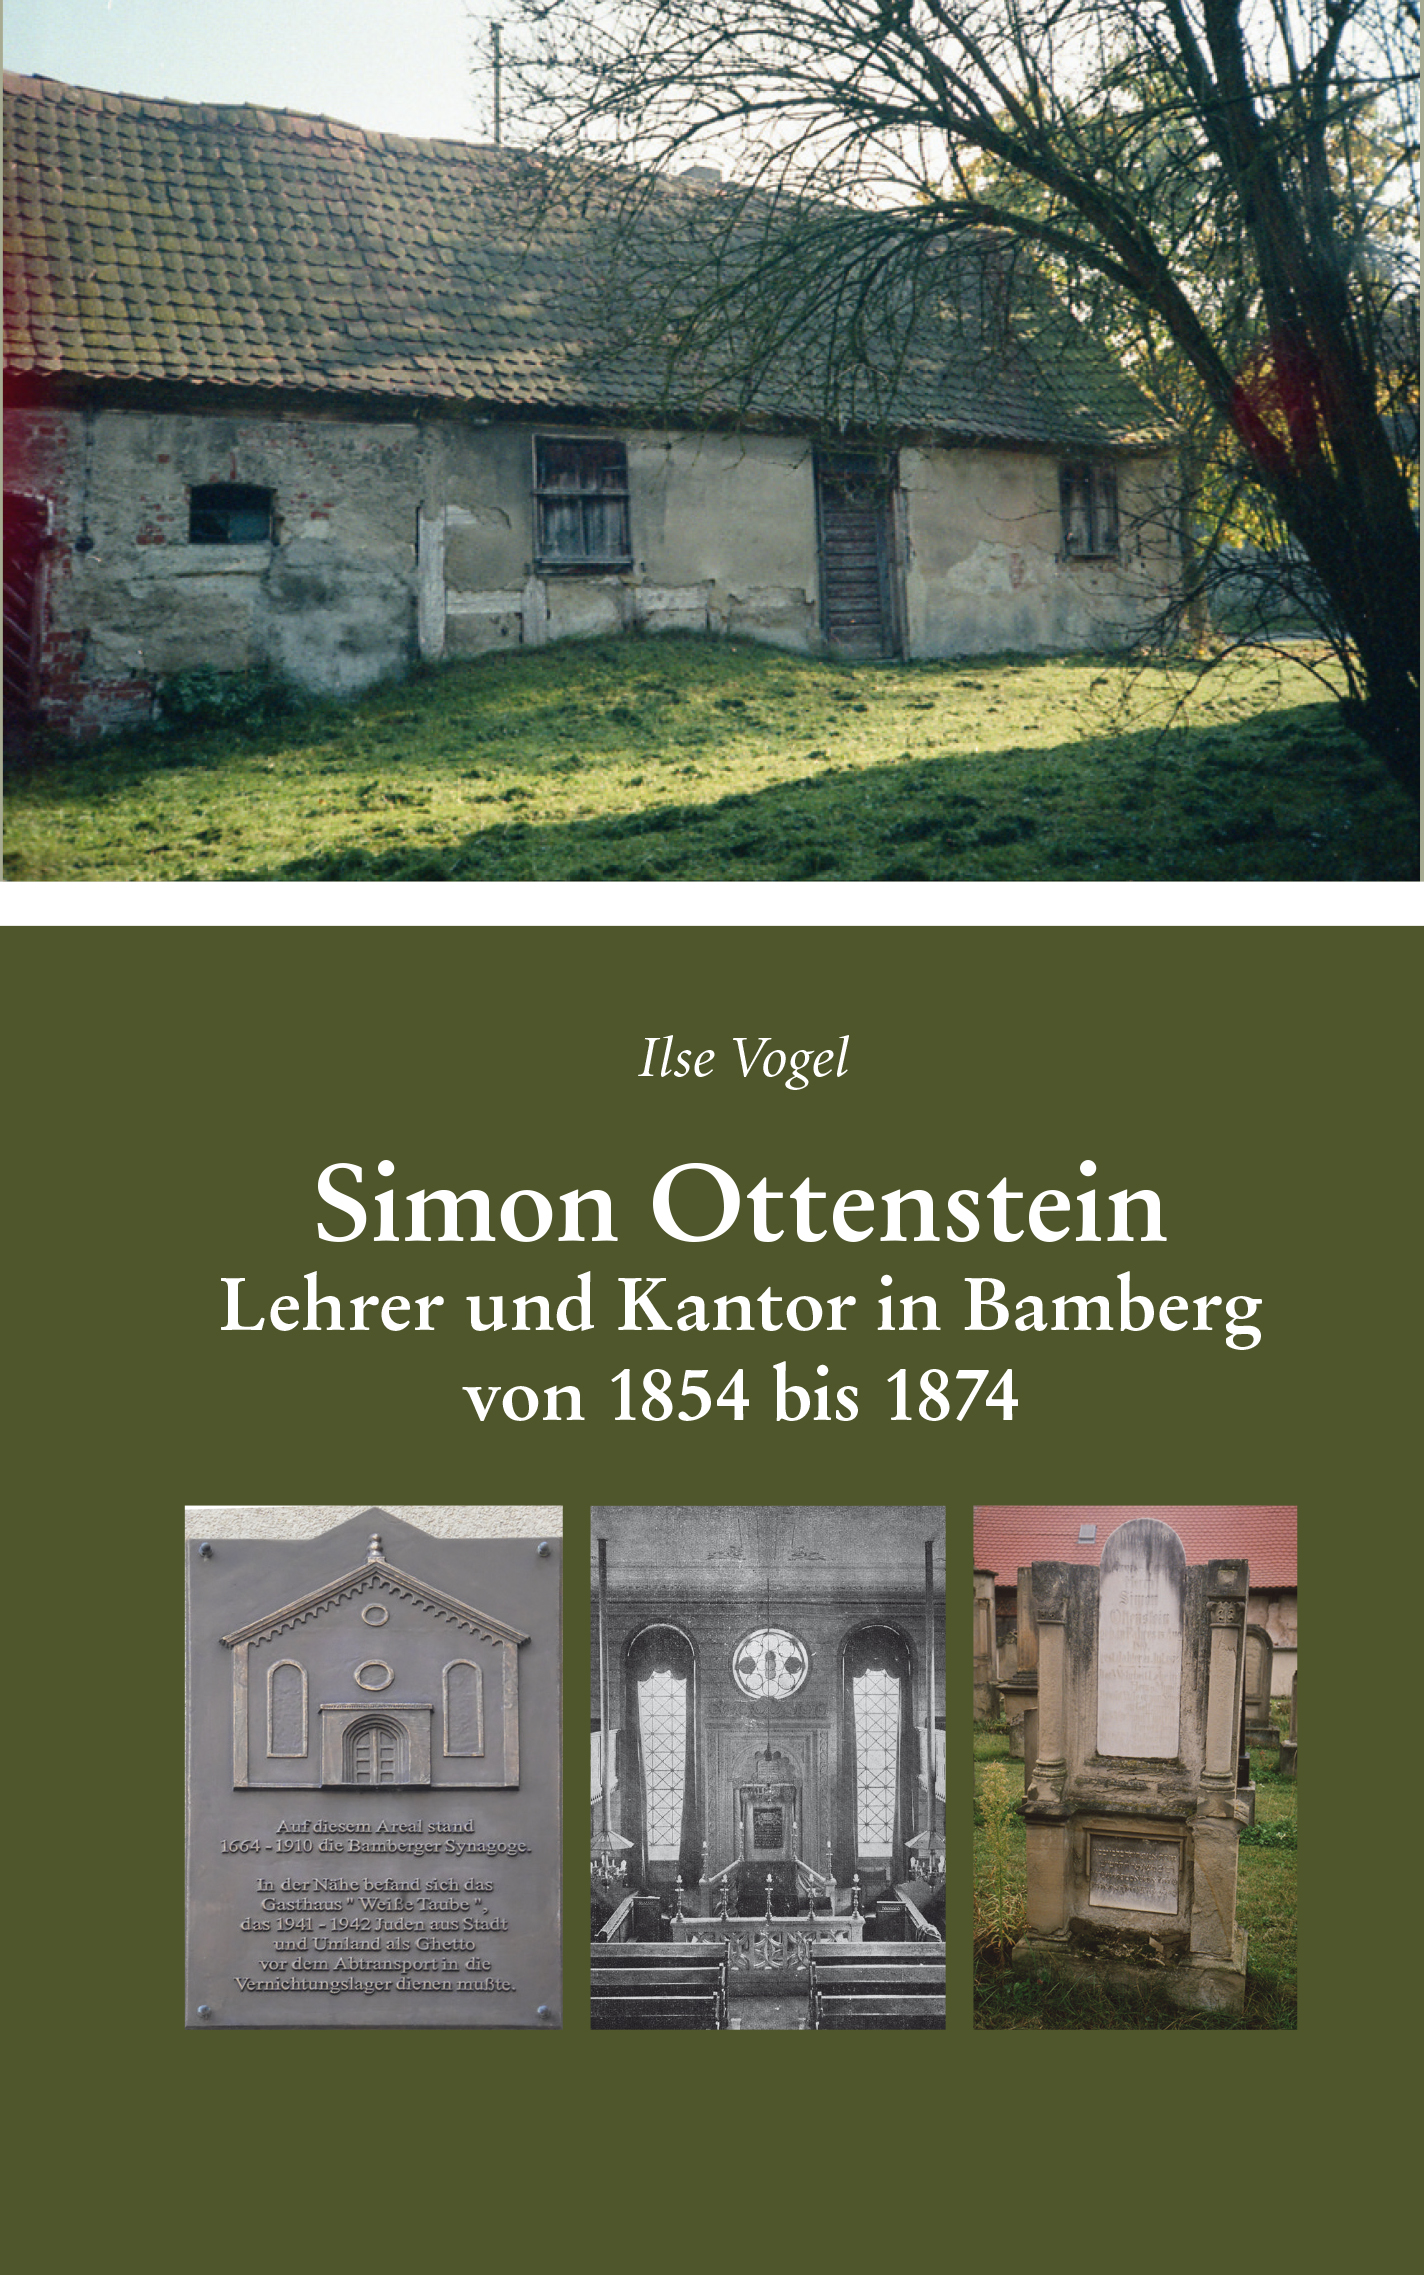 Vogel Ilse - Simon Ottenstein. Lehrer und Kantor in Bamberg von 1854 bis 1874